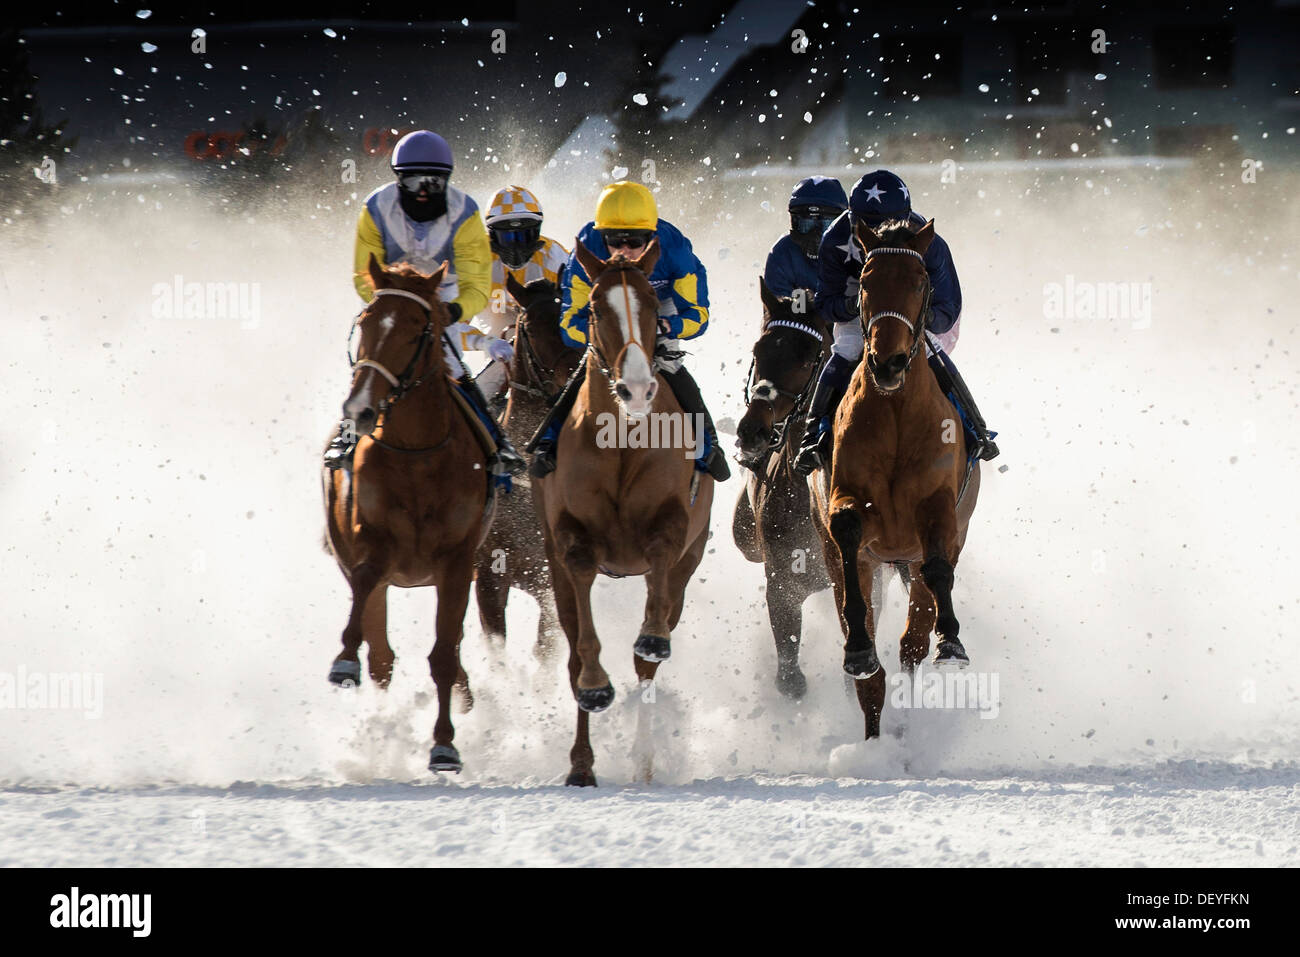 Les courses de chevaux sur un lac gelé, Saint-Moritz, Engadine, Grisons, Suisse Banque D'Images